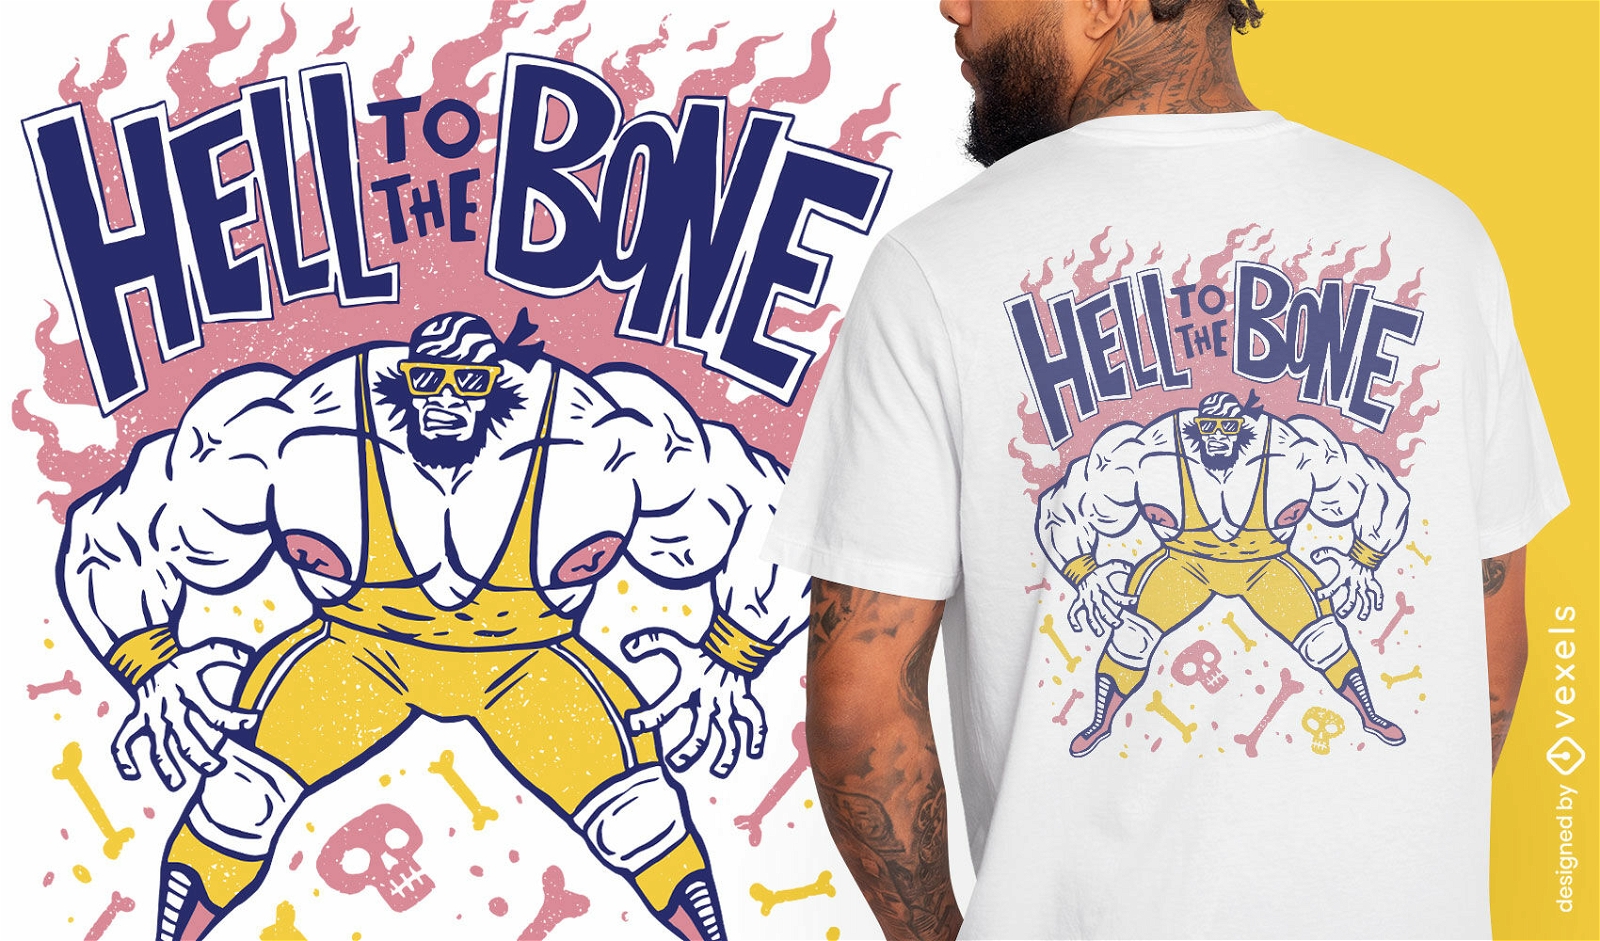 Amerikanisches Wrestling-Charakter-T-Shirt-Design